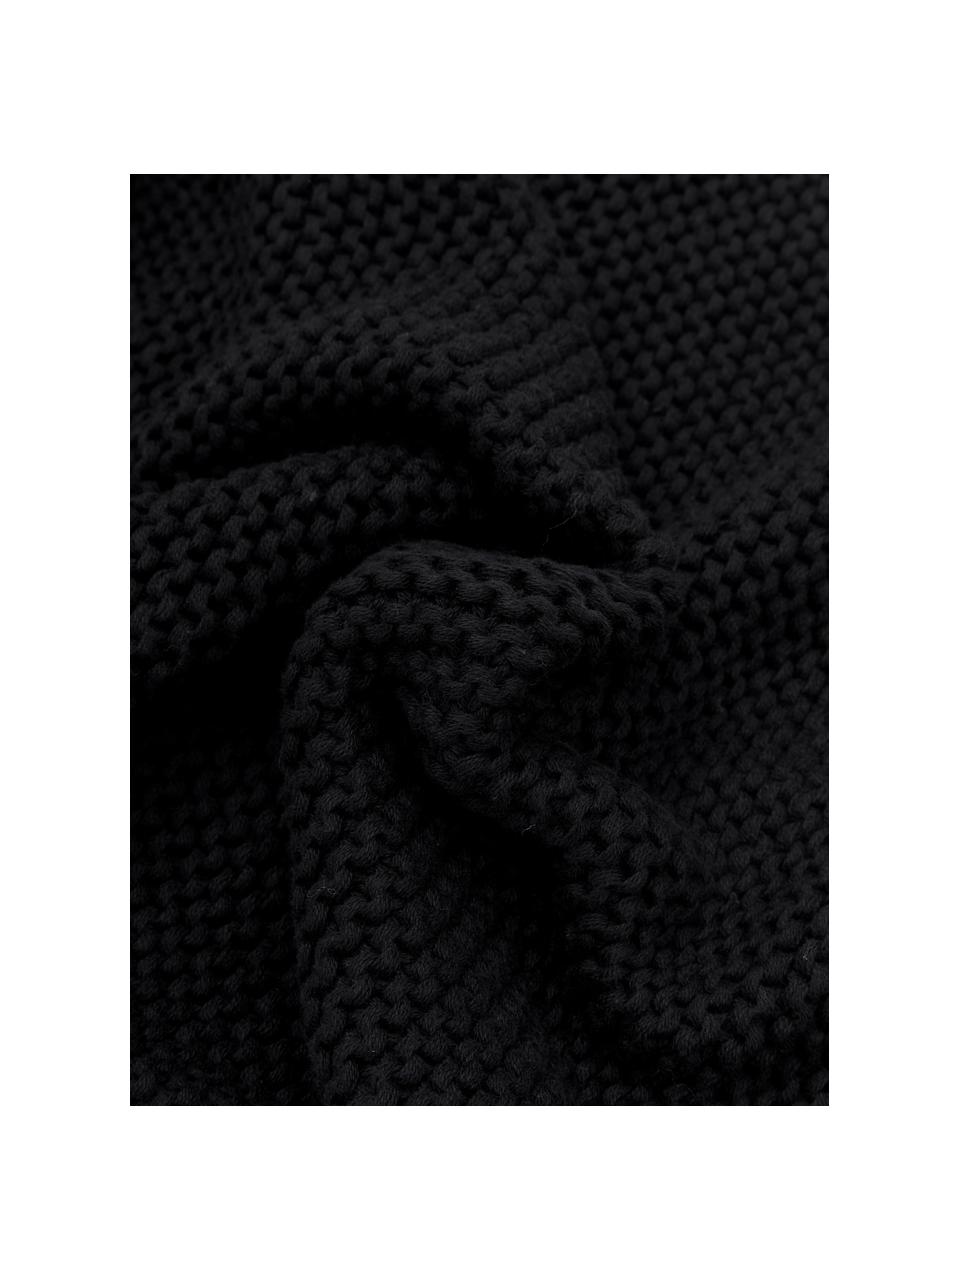 Housse de coussin en tricot Adalyn, 100 % coton bio, certifié GOTS, Noir, larg. 40 x long. 40 cm